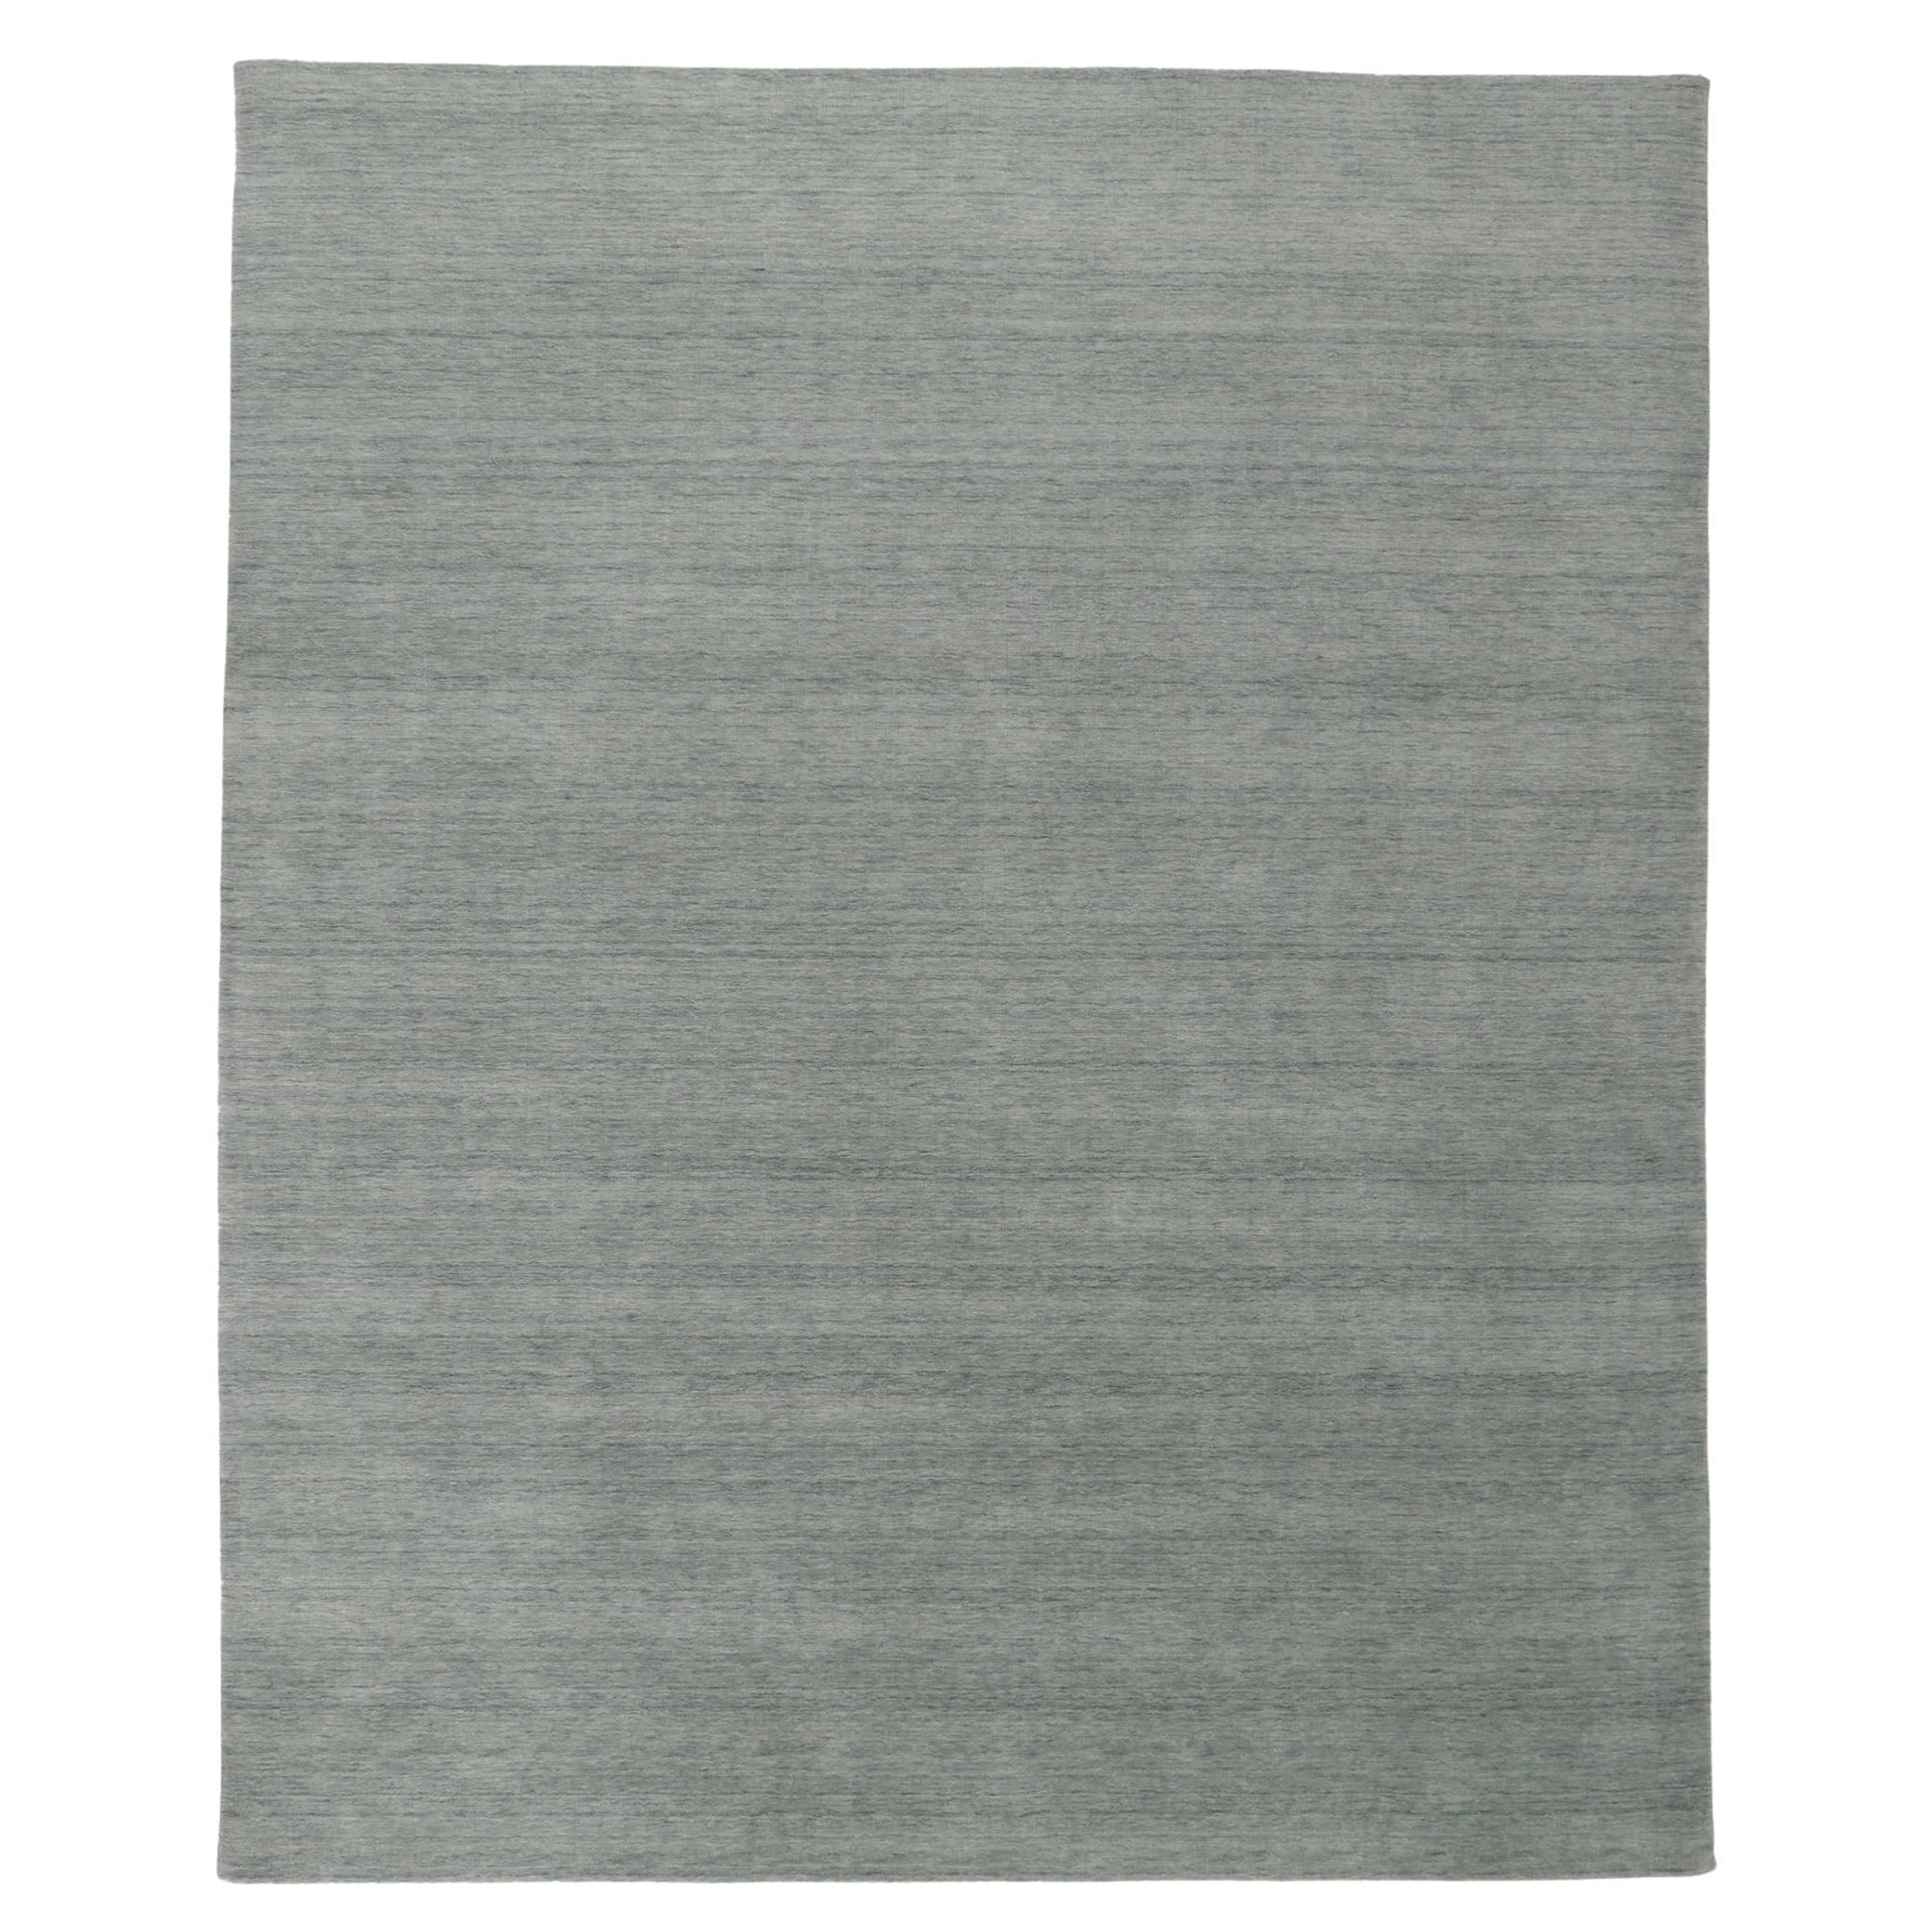 Nouveau tapis gris contemporain de style moderne en vente